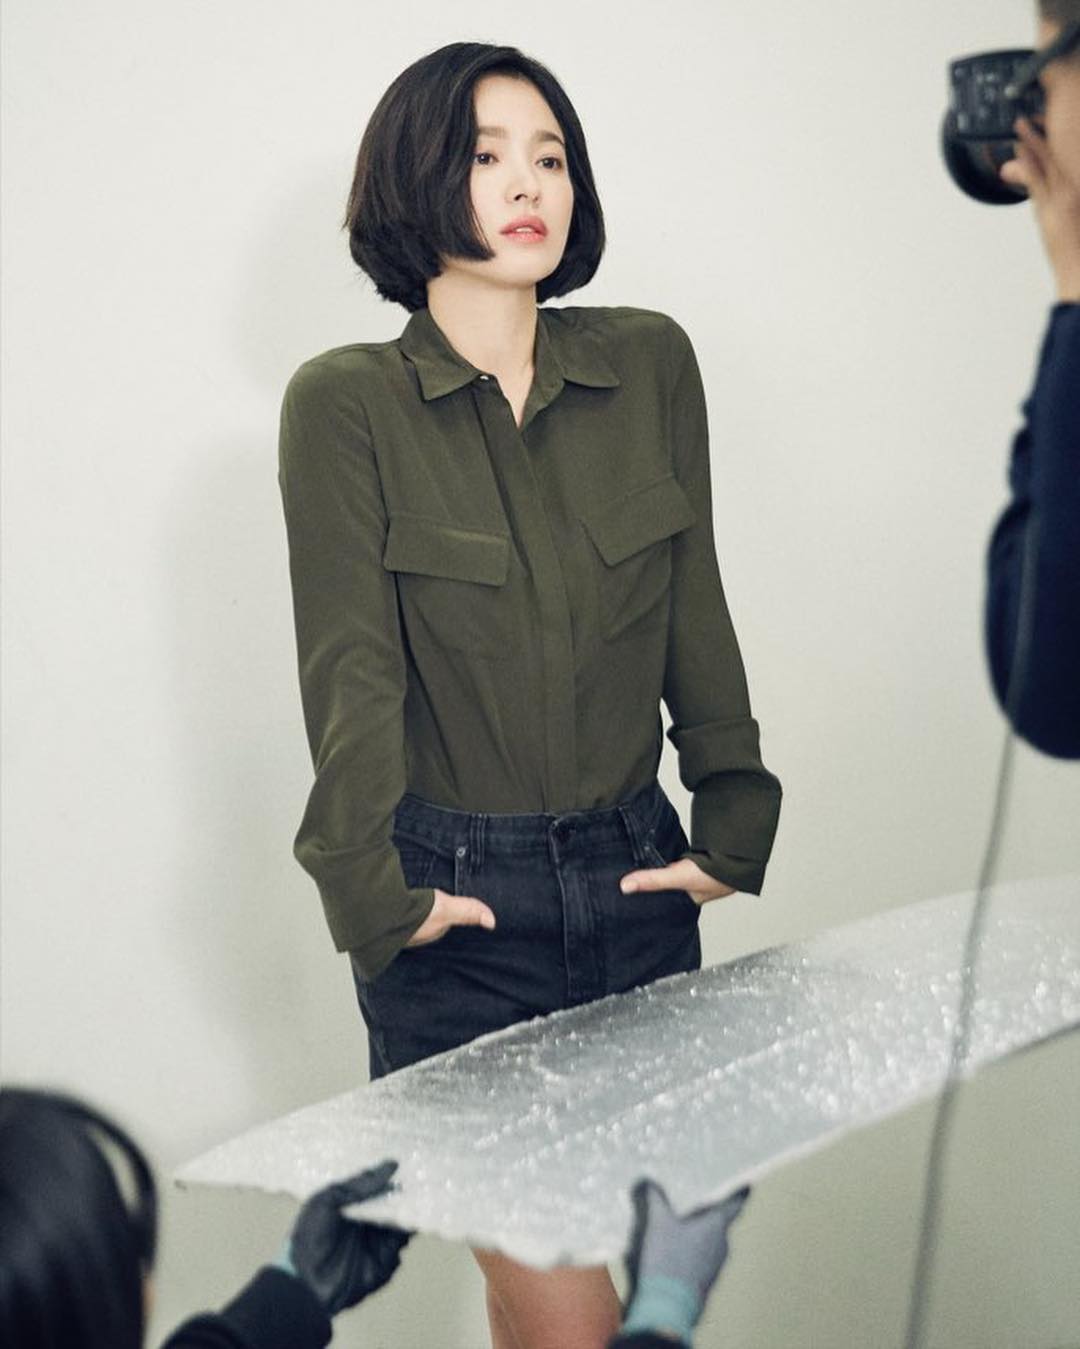 6 kiểu tóc xuất sắc nhất của Song Hye Kyo, chị em U30 'đu' theo thì nhan sắc dễ thăng hạng trong nháy mắt - Ảnh 12